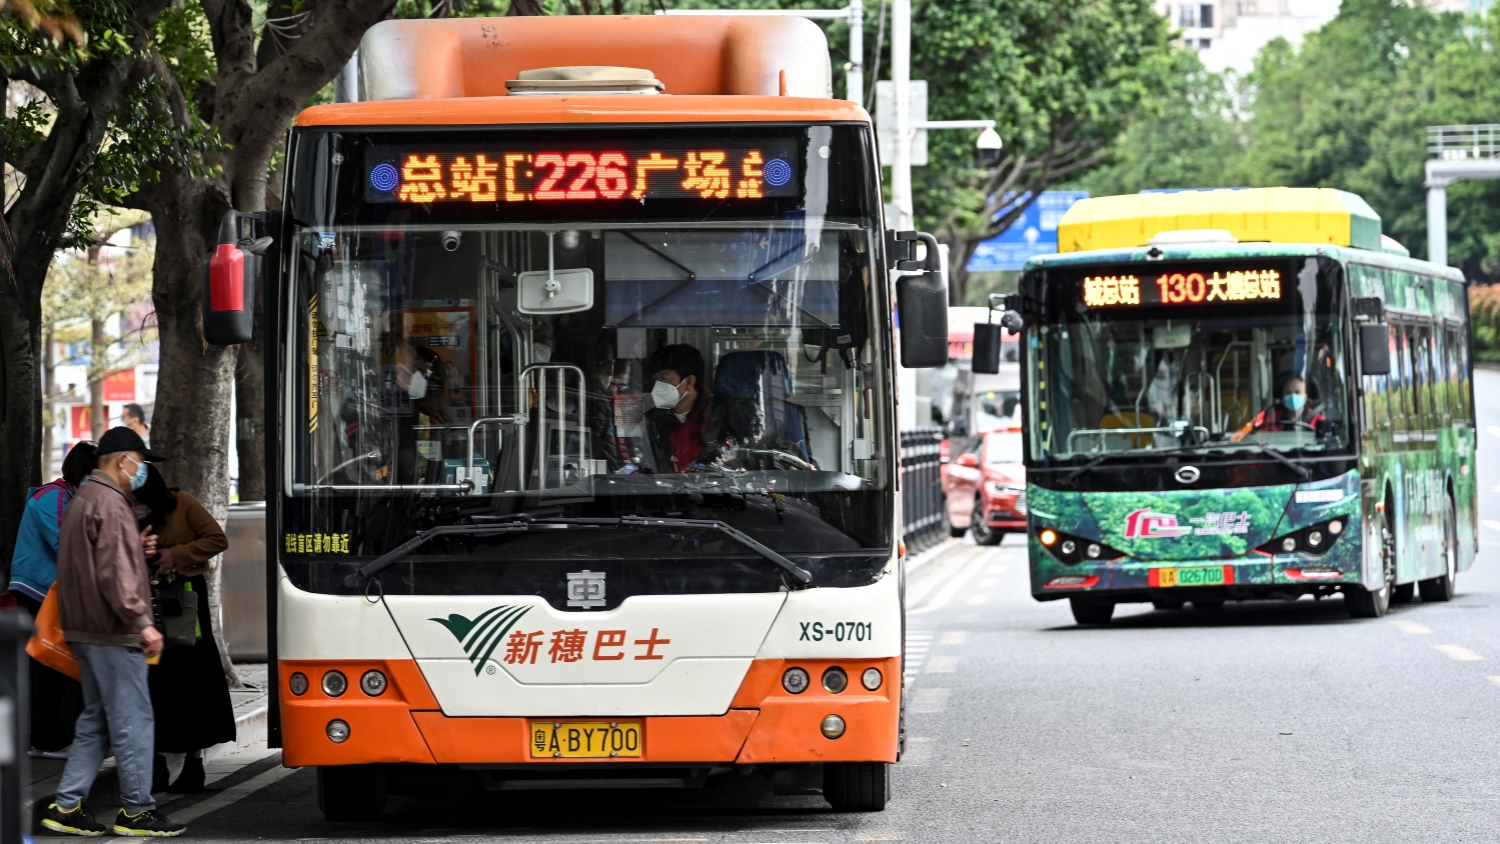 車內使用電子設備時不得外放聲音 《廣州市公共汽車電車乘車守則》徵求意見